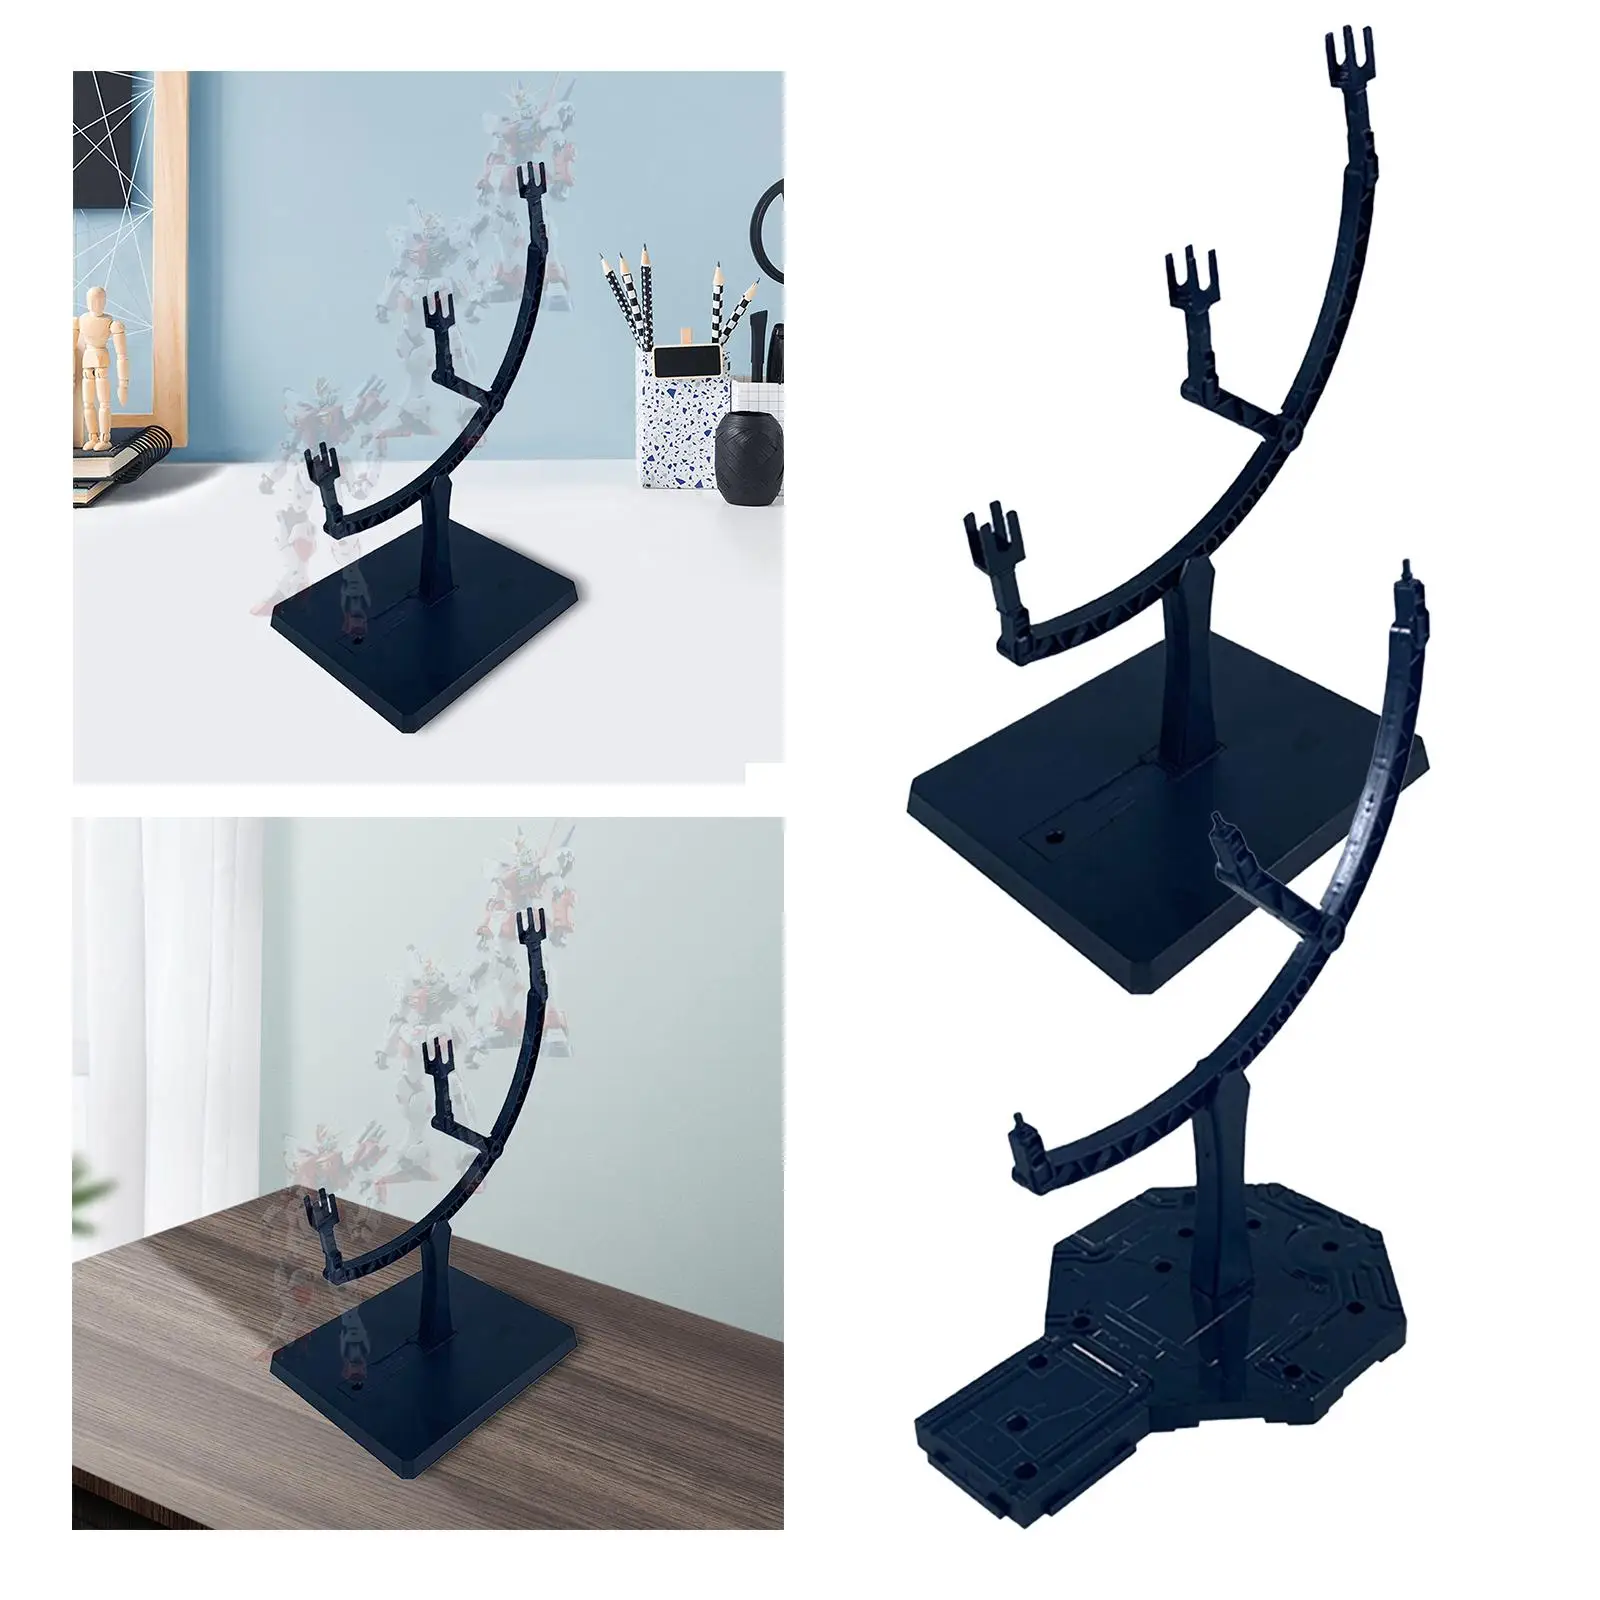 Action Figure Stand Figure Support Base Rack for Desktop Bedroom Decorative